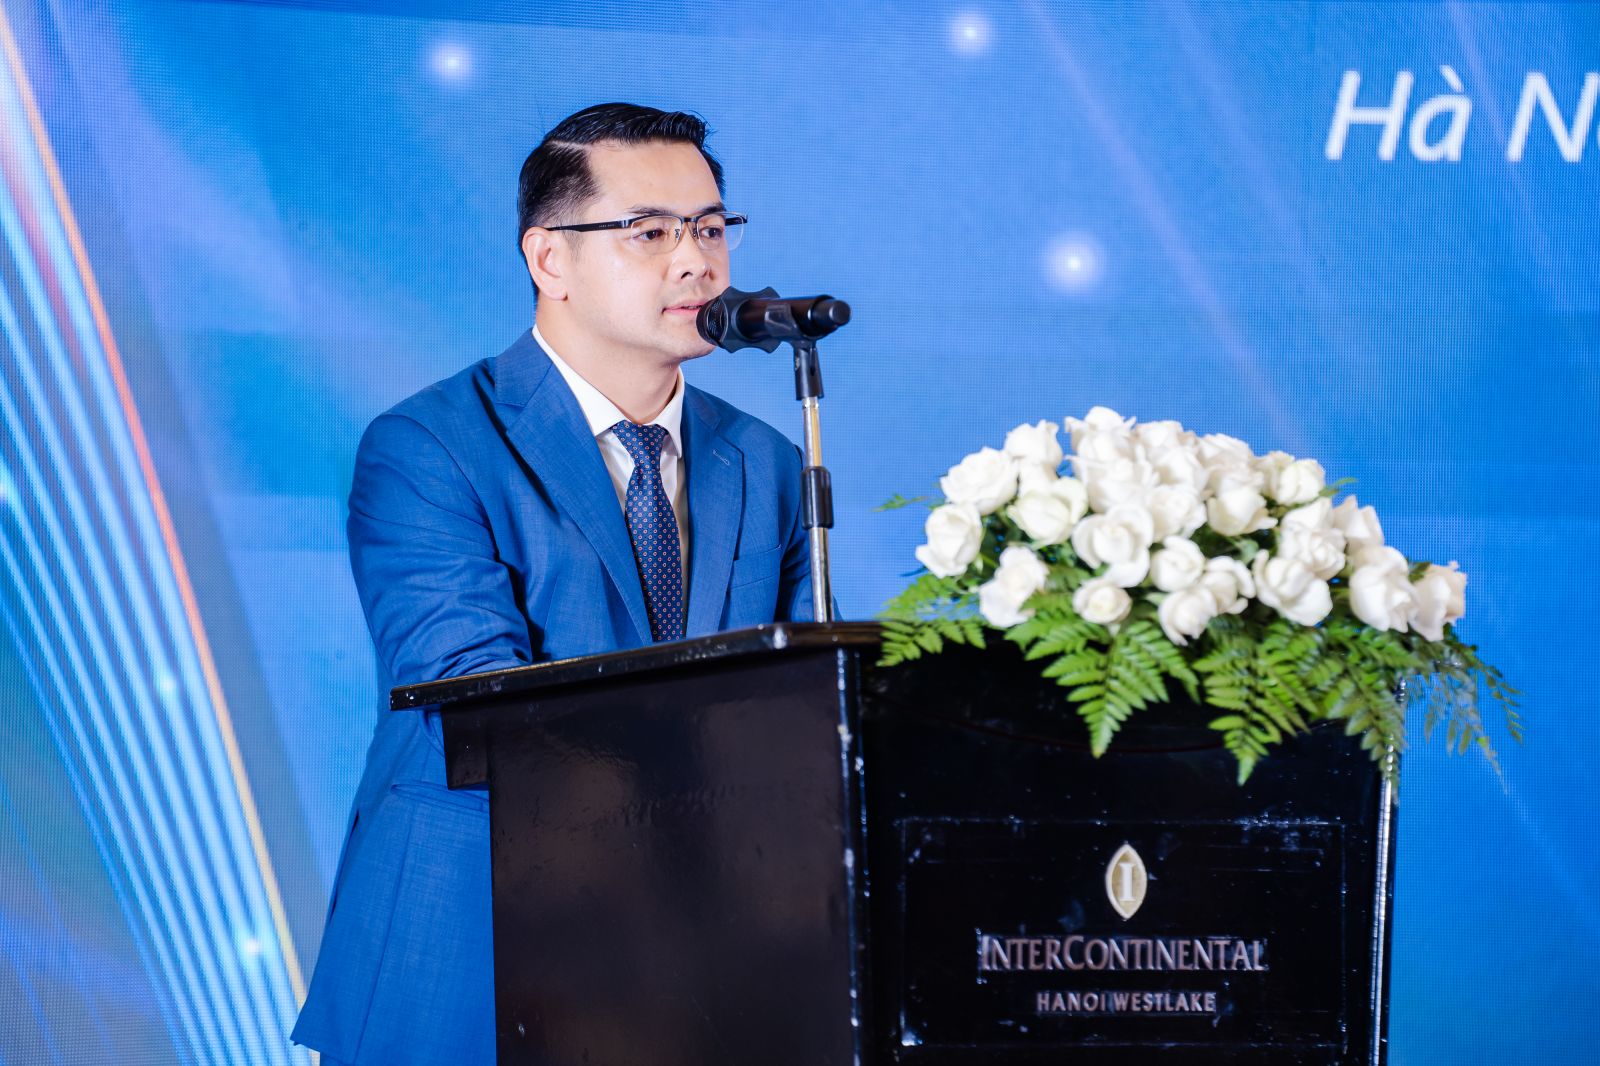  Ông Nguyễn Ngọc Quỳnh, Phó Tổng giám đốc Sở Giao dịch Hàng hóa Việt Nam